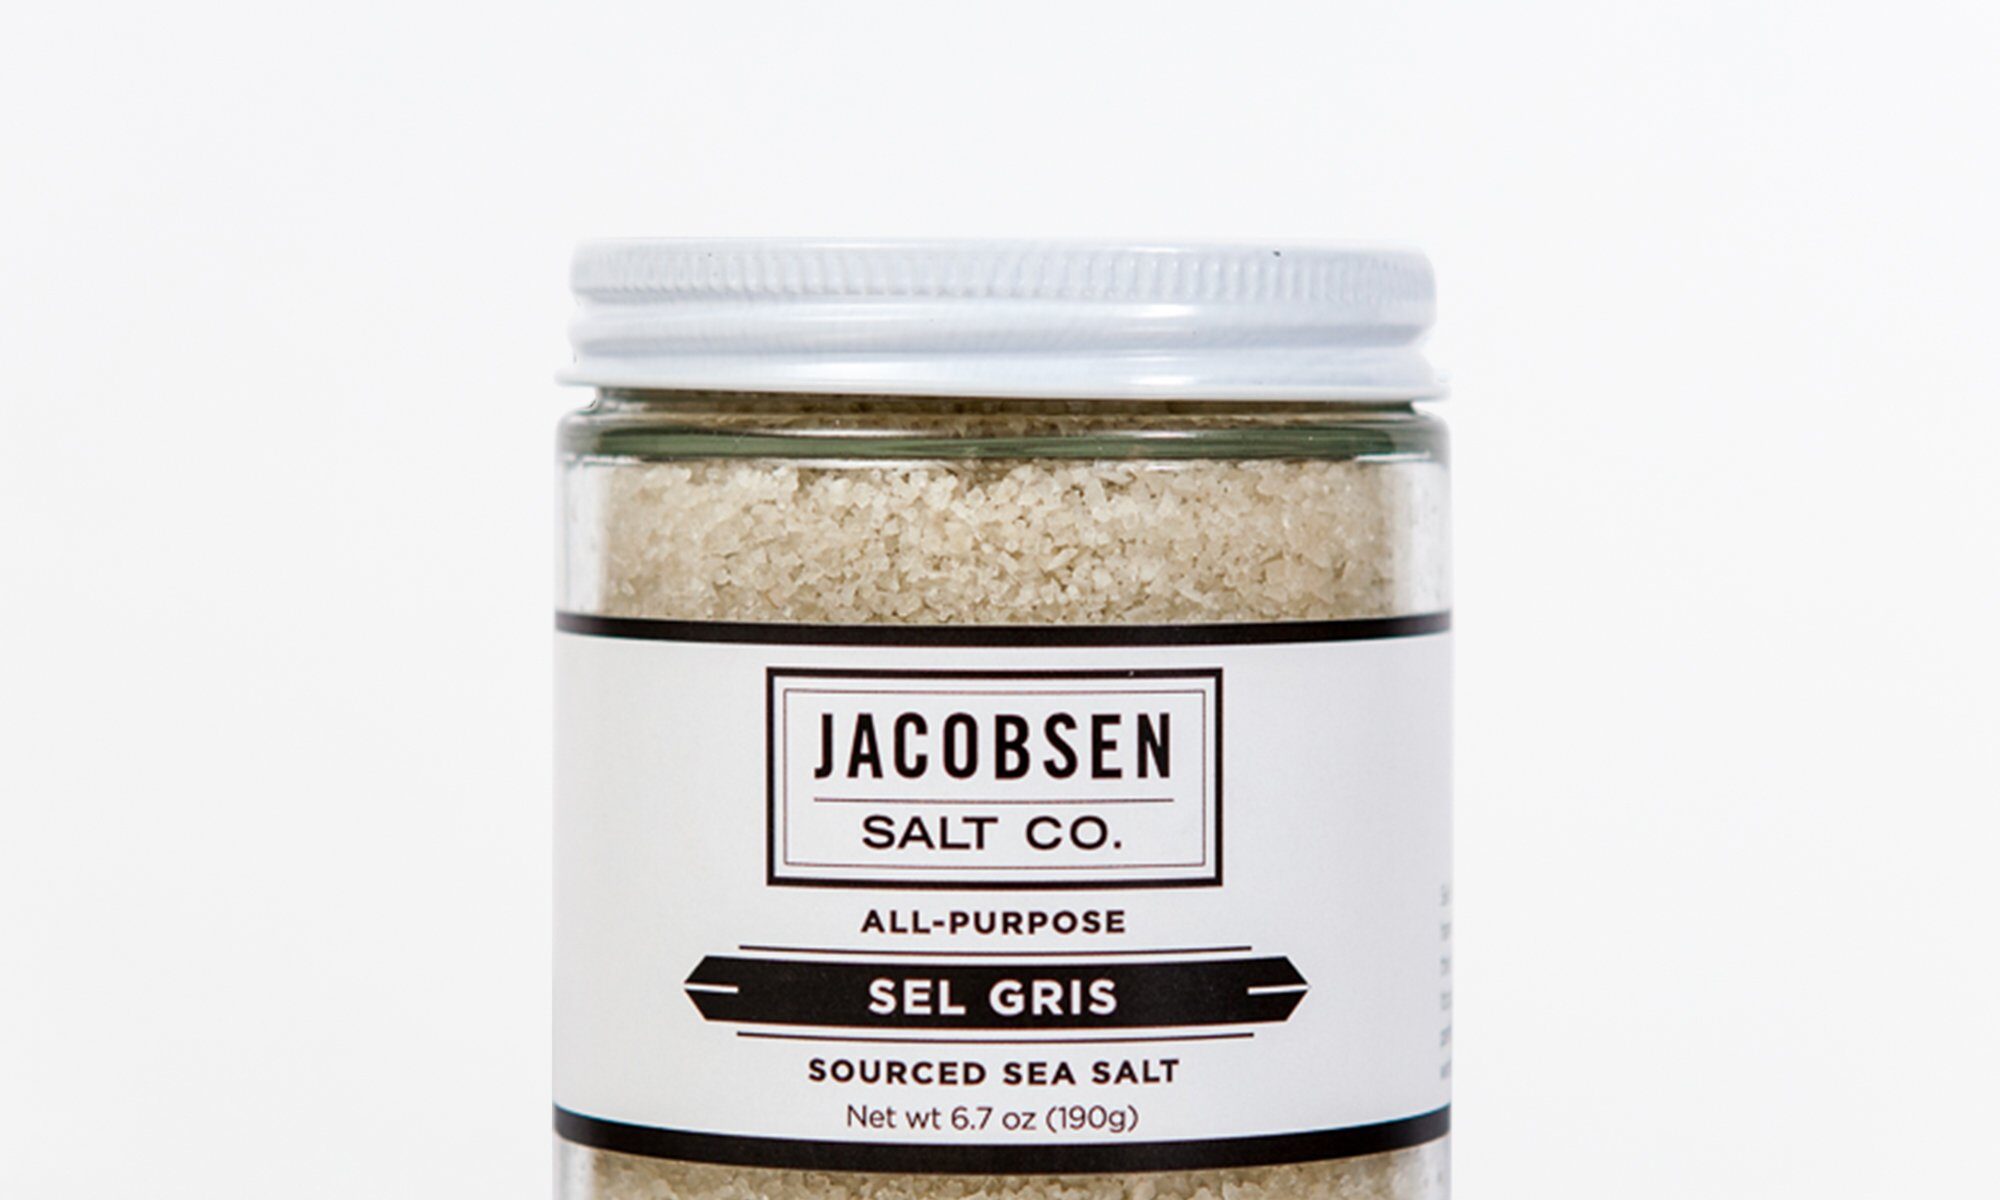 Image of a jar of Jacobsen Salt Co. Sel Gris